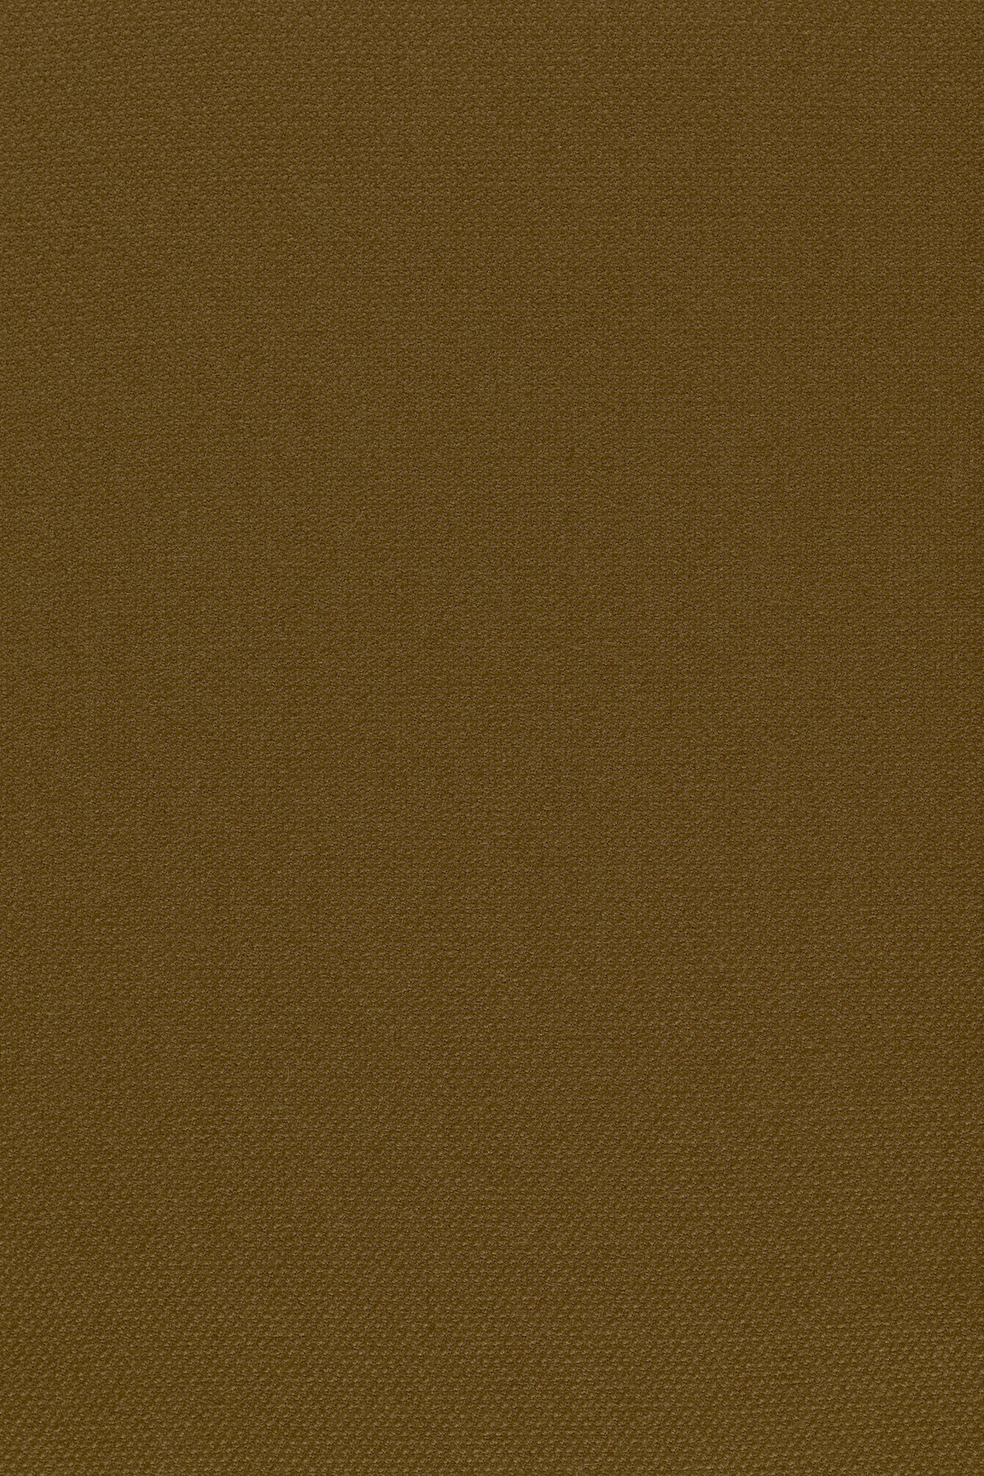 Fabric sample Steelcut 2 265 brown